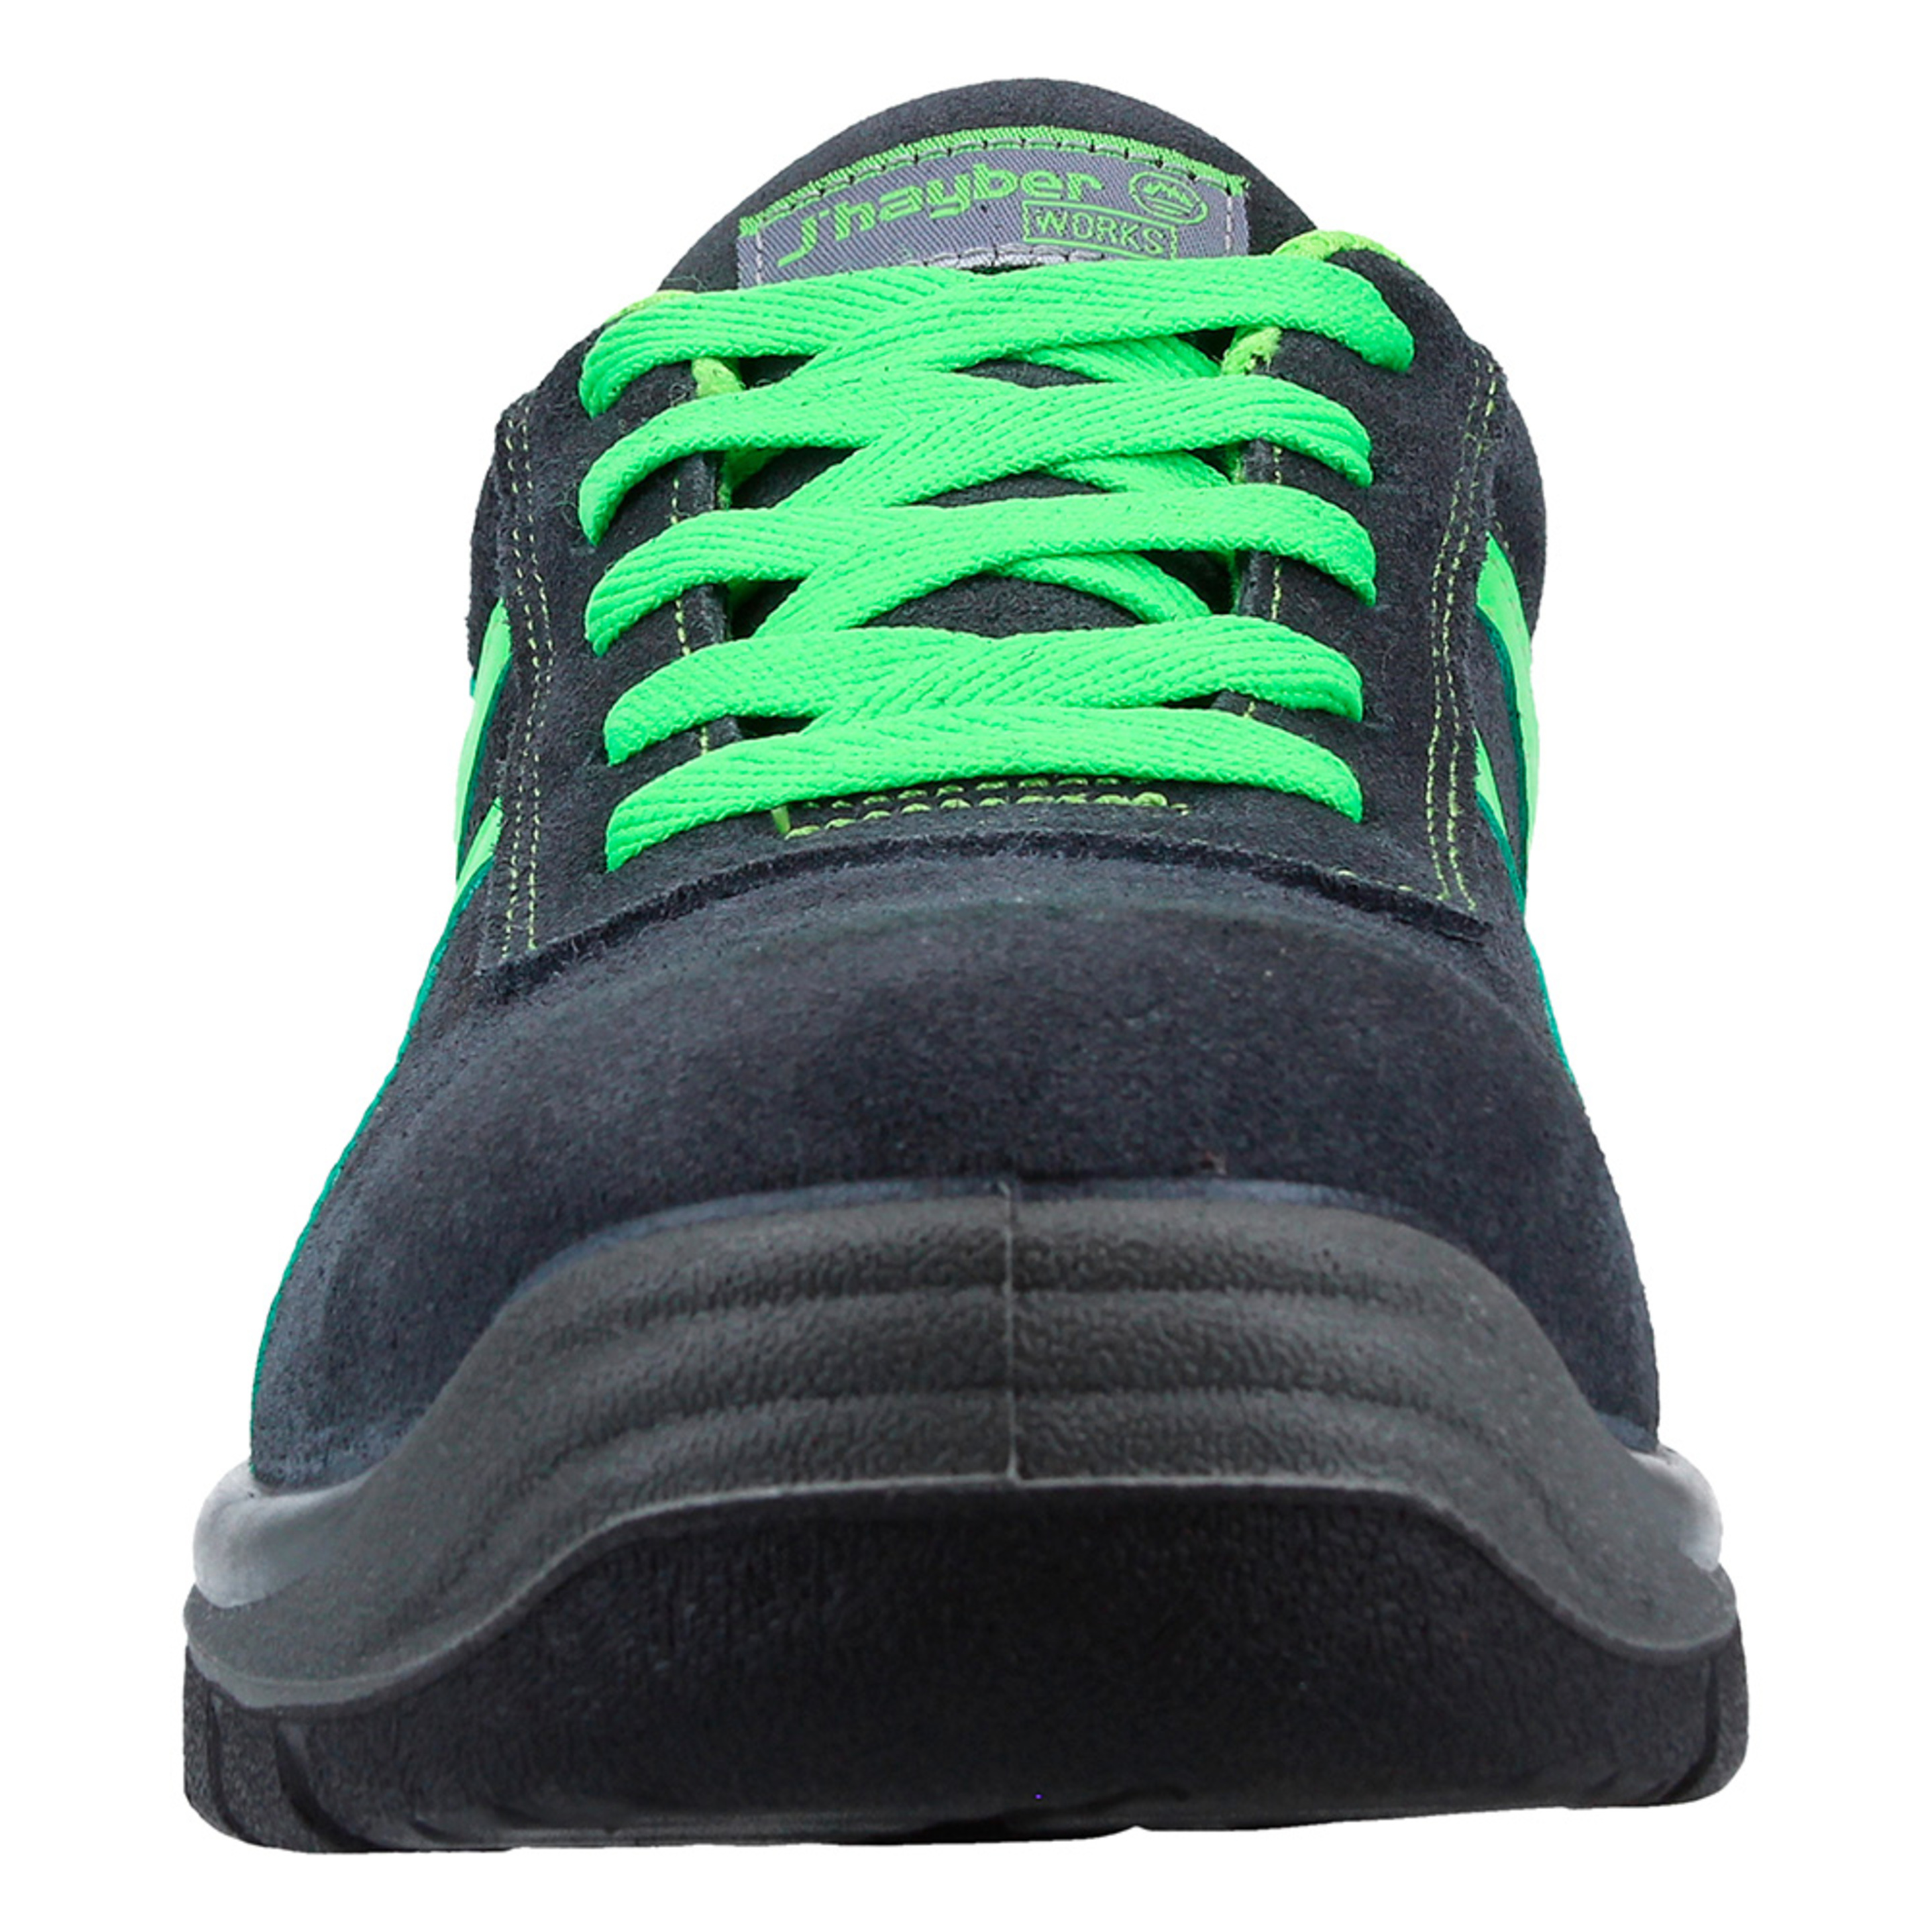 Zapato De Seguridad Titanio De J'Hayber Works - Gris/Verde - Titanio S1p Src  MKP